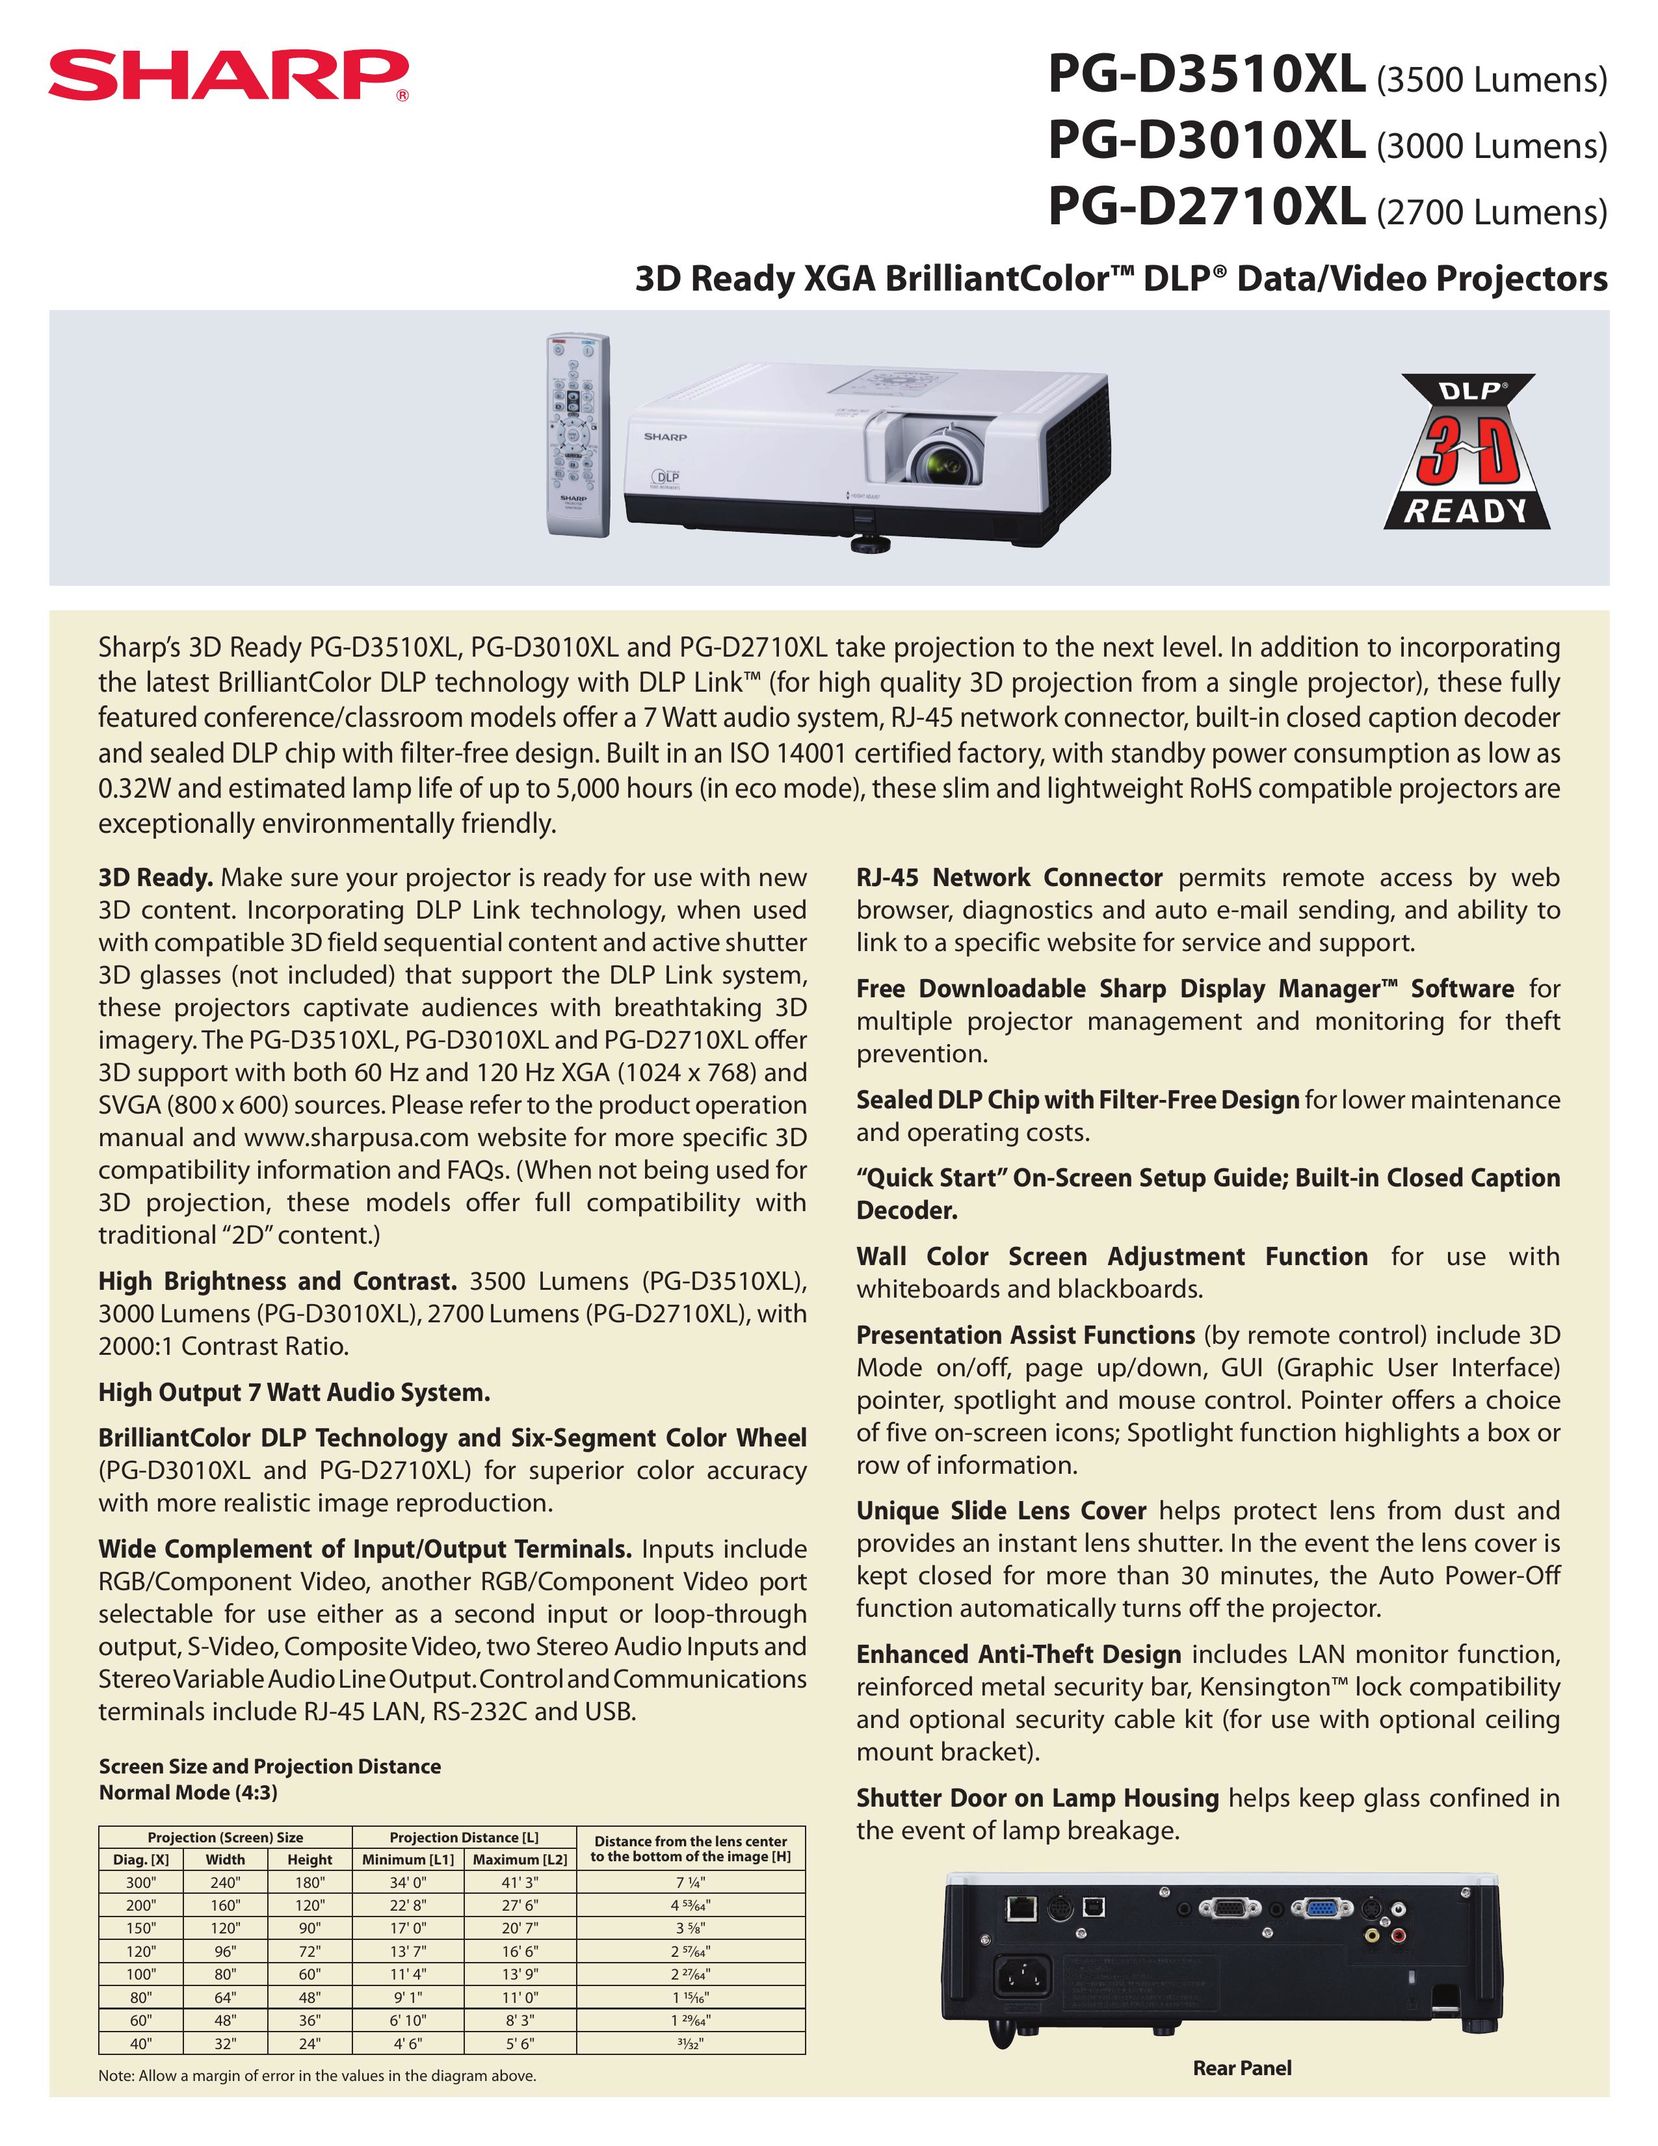 Sharp PG-D3510XL Projector User Manual